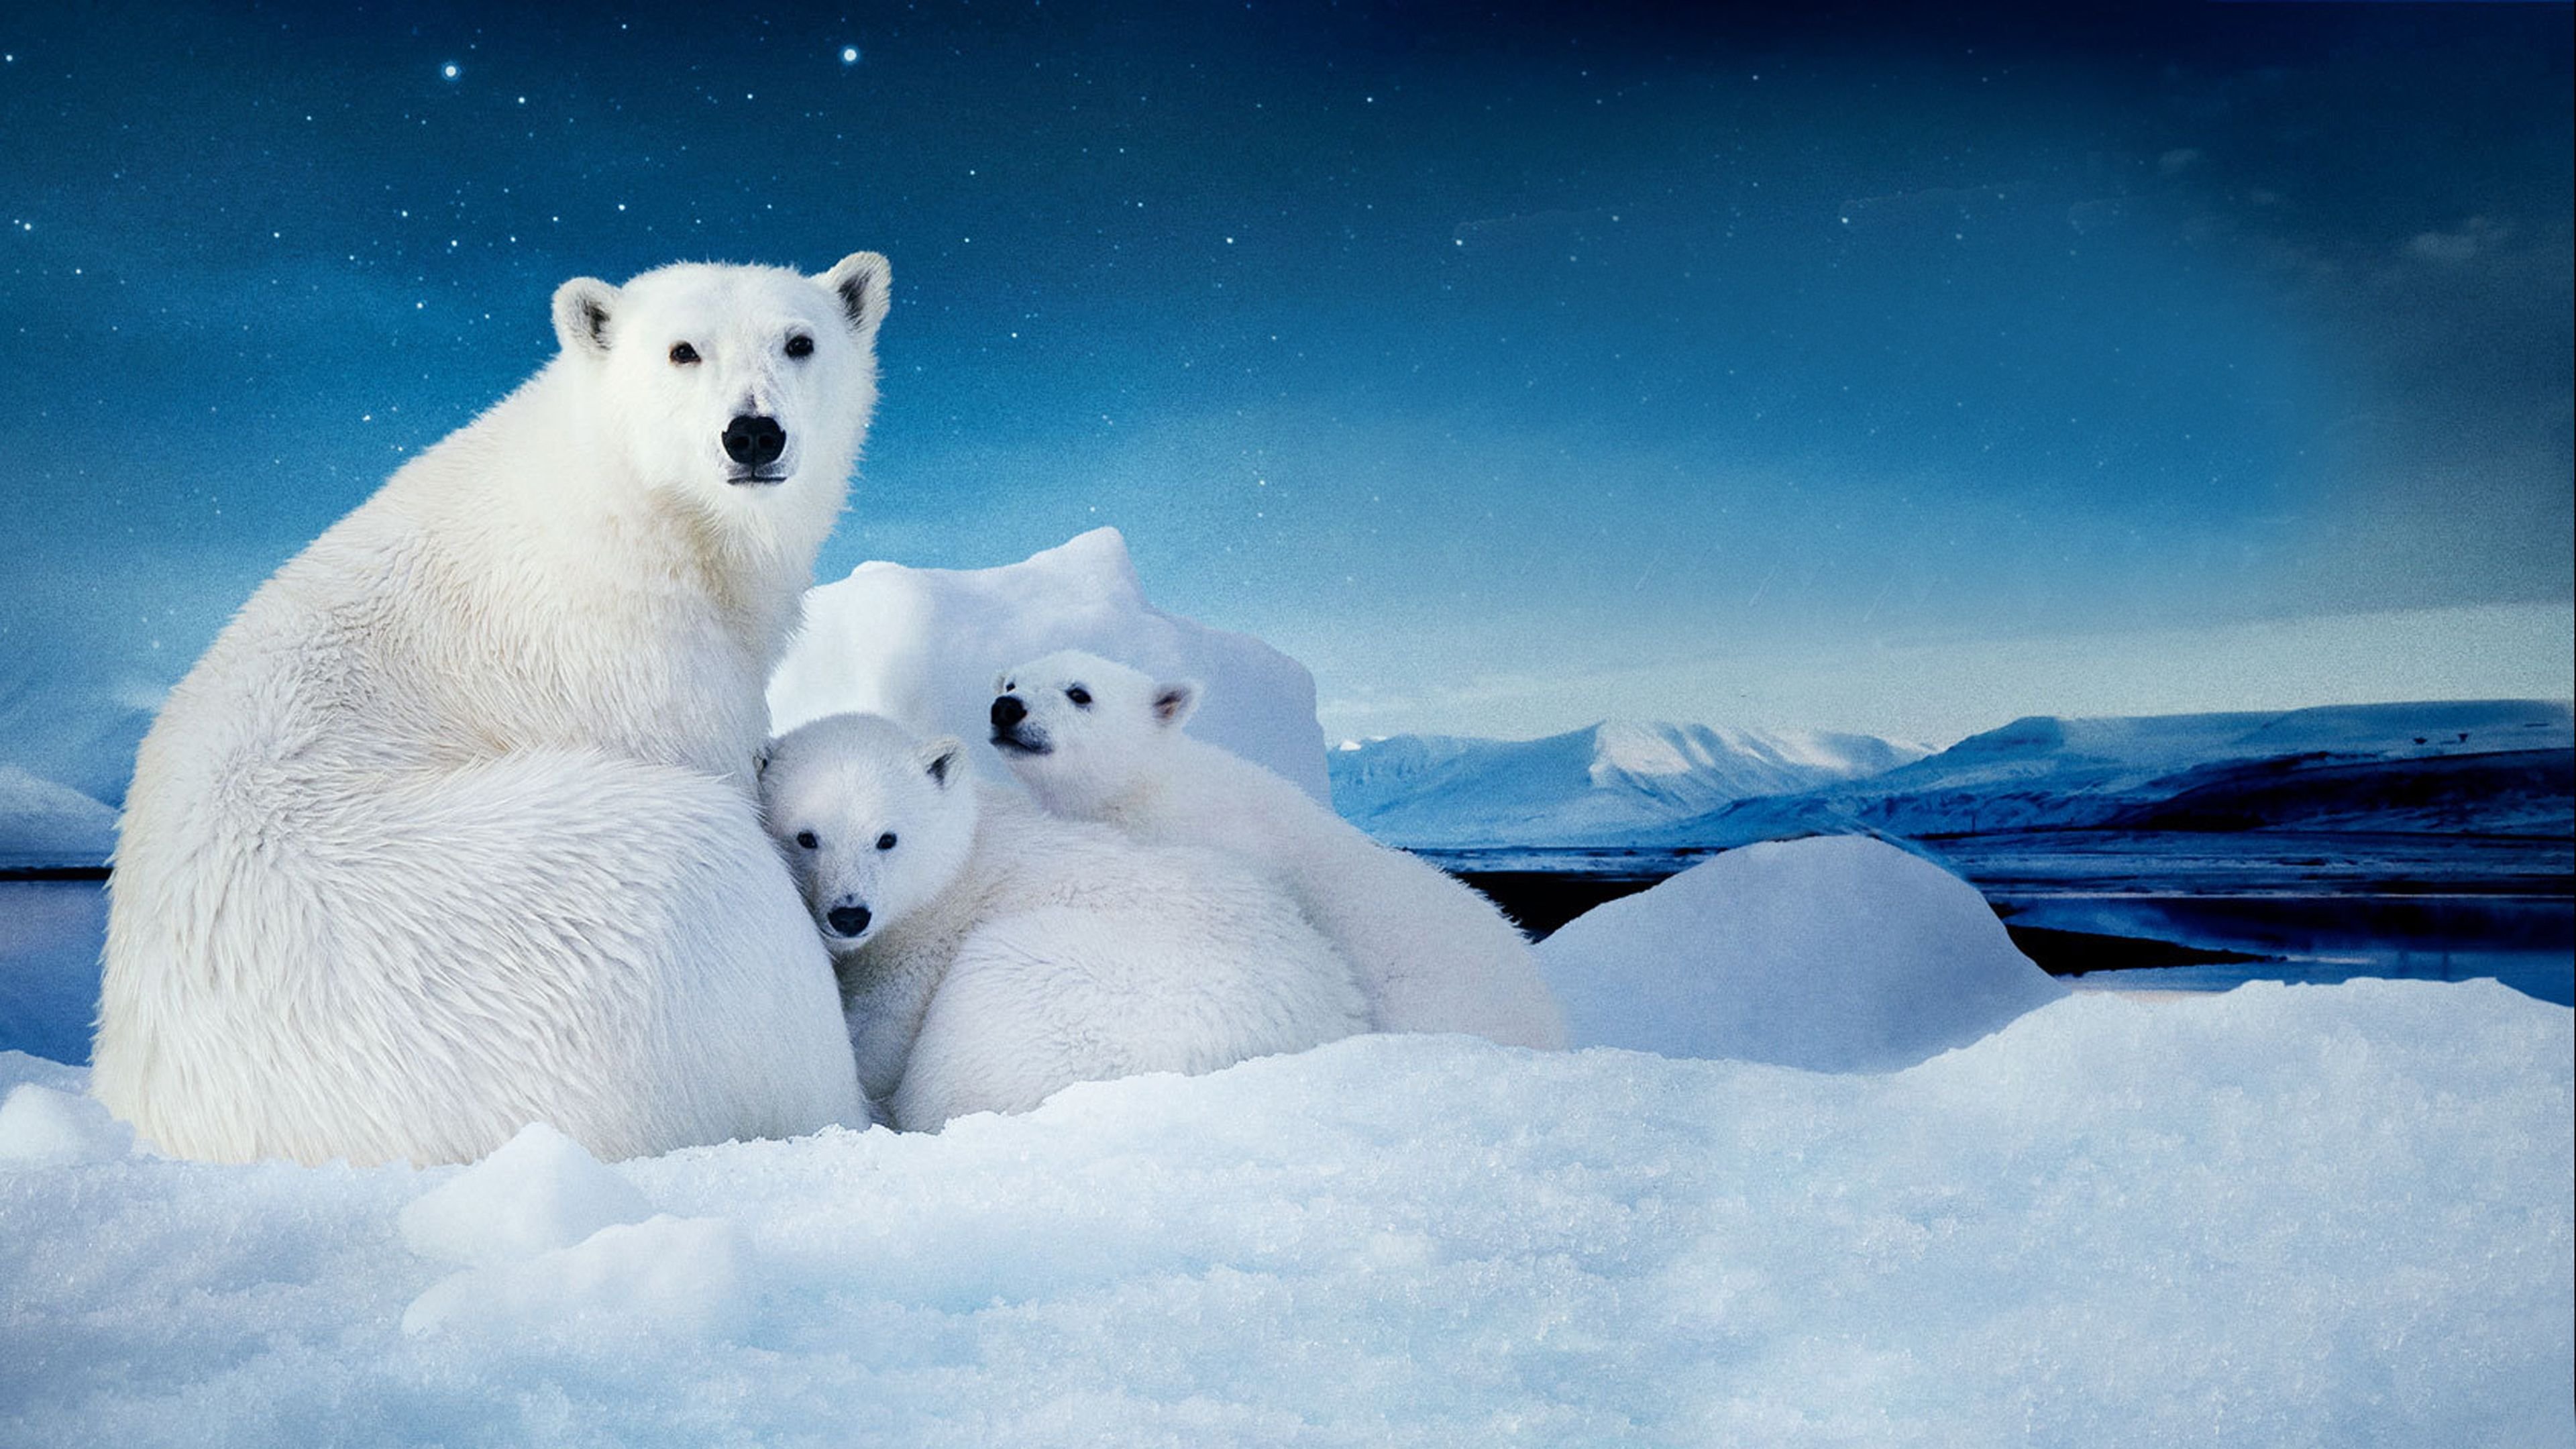 Ice animals. Северный полюс Арктика. Белый медведь Северный полюс. Белые медведи в Антарктиде. Белые медведи в Арктике.